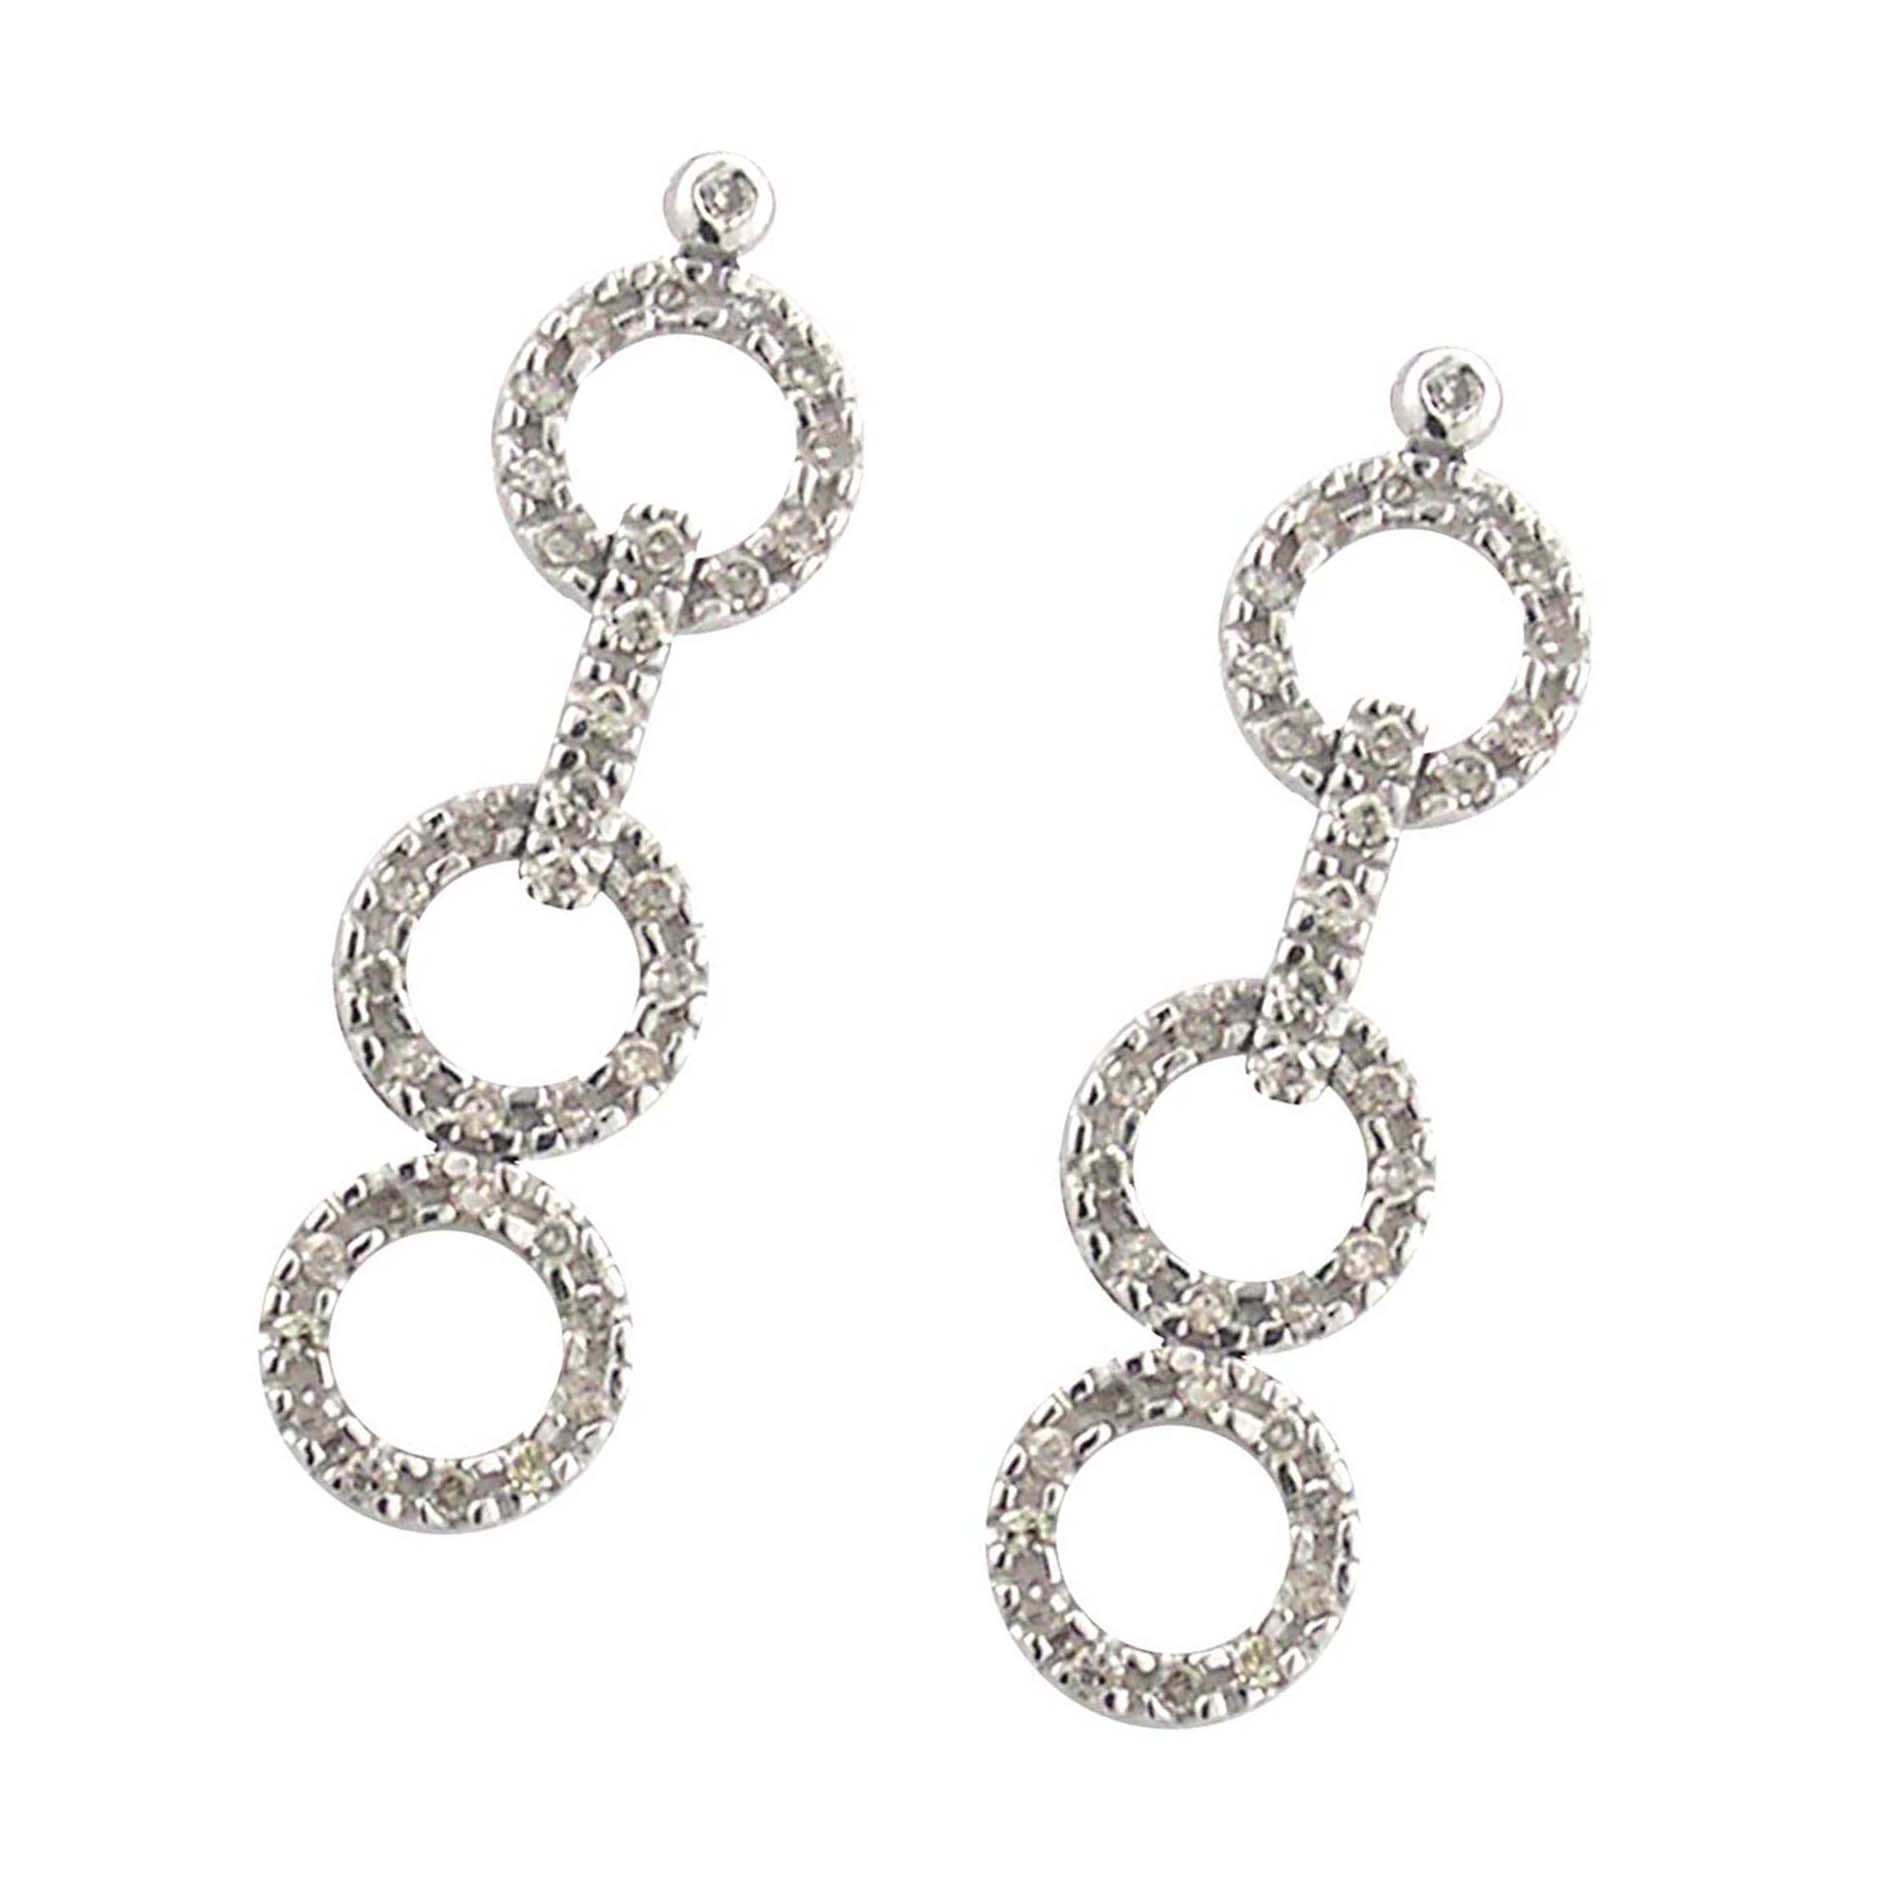 1/2 cttw Diamond 3 Circle Drop Earrings. 10k White Gold